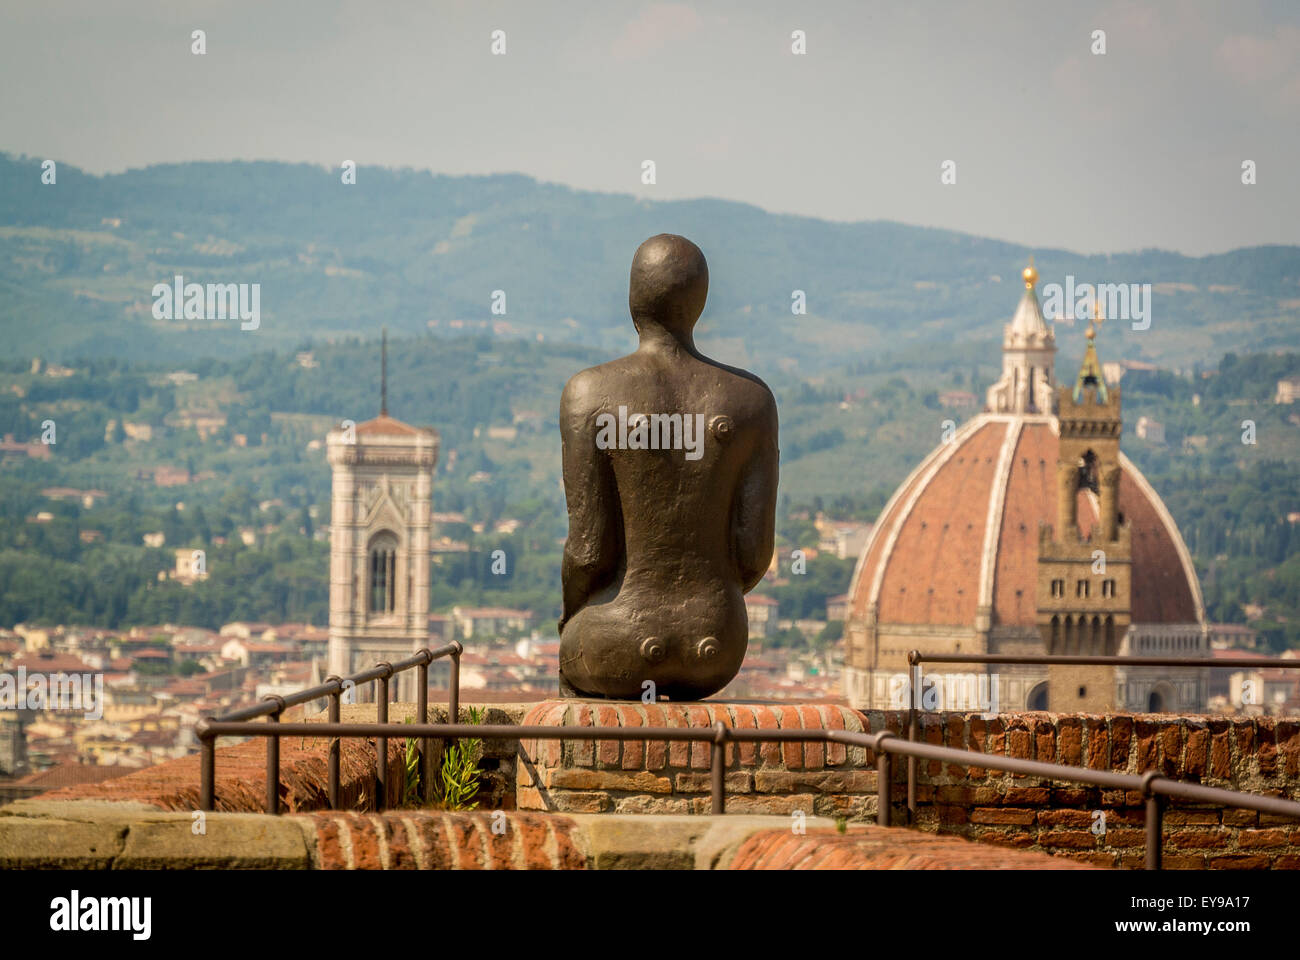 Cathédrale de Florence avec la sculpture d'un homme de fer d'Antony Gormley au premier plan. Photo de fort Belvedere, Florence. Partie de l'EXPOSITION HUMAINE. Banque D'Images